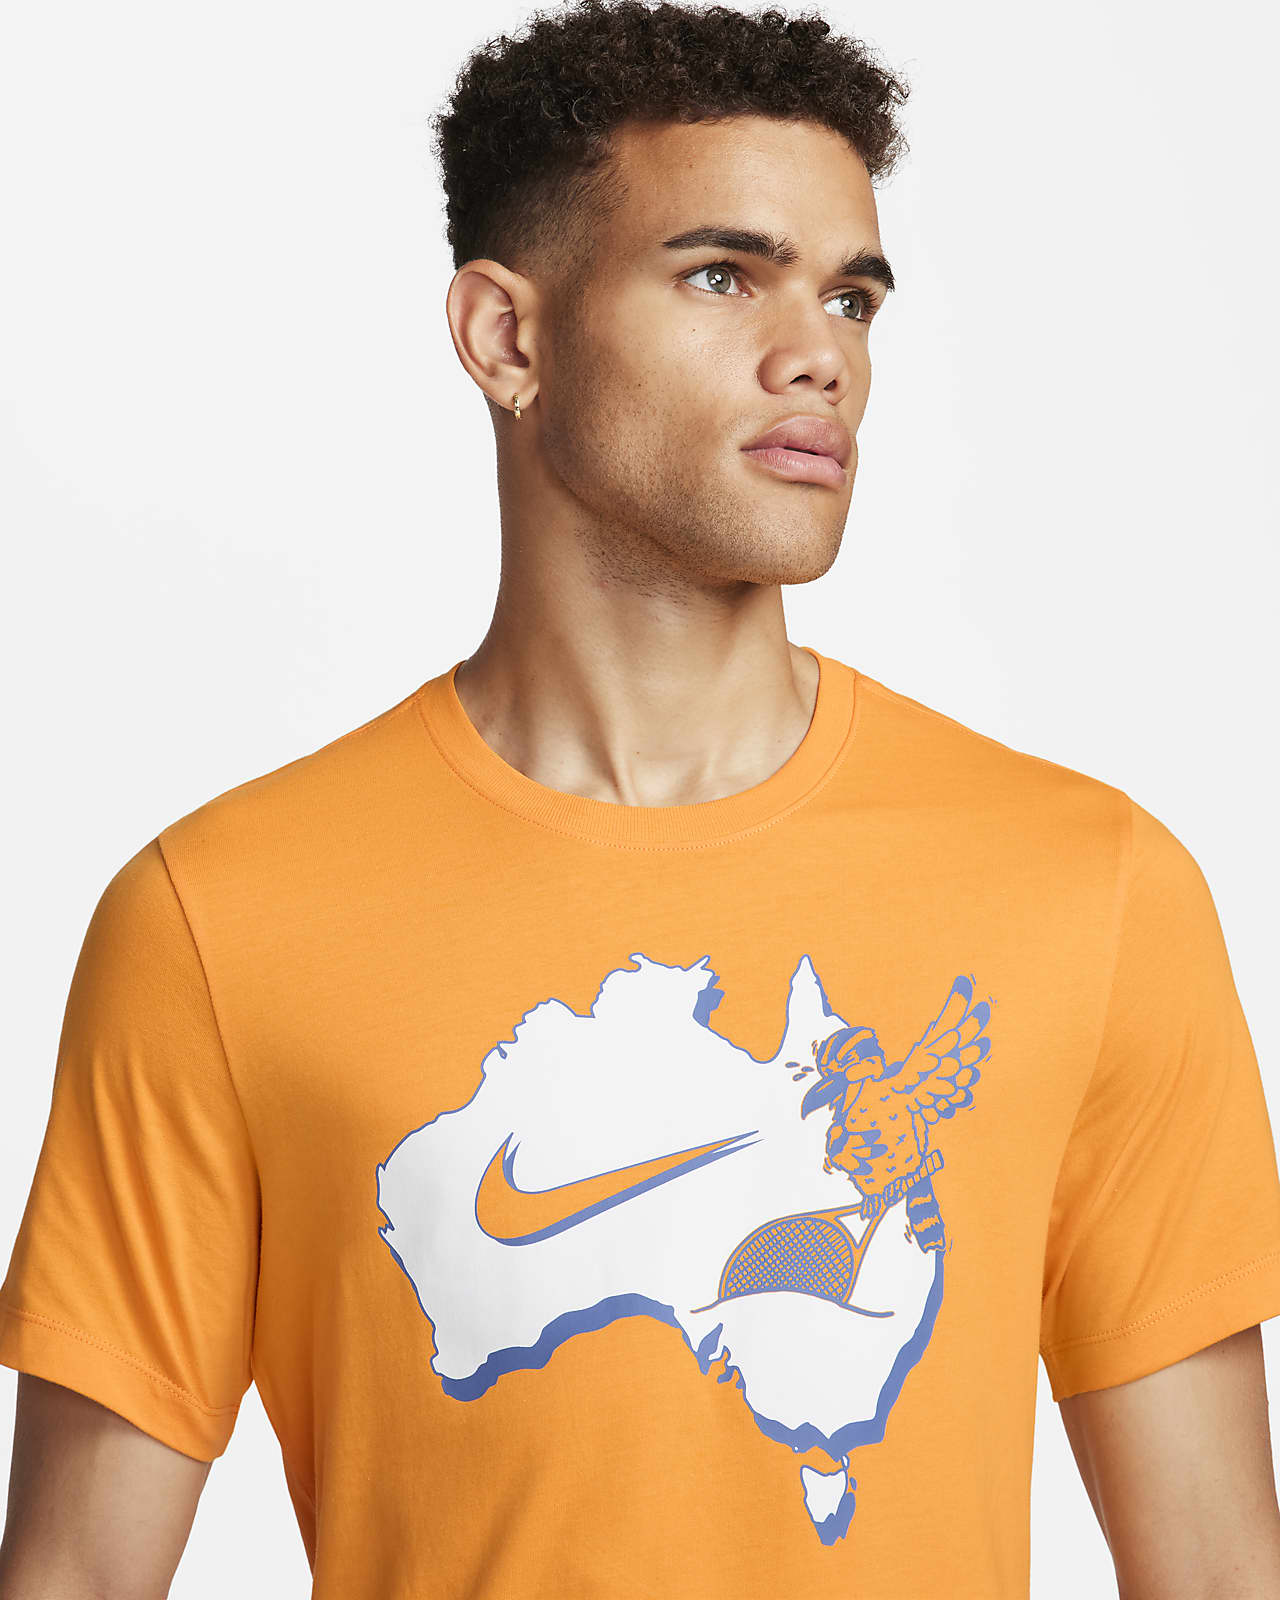 T-shirt de Tennis Nikecourt pour Homme